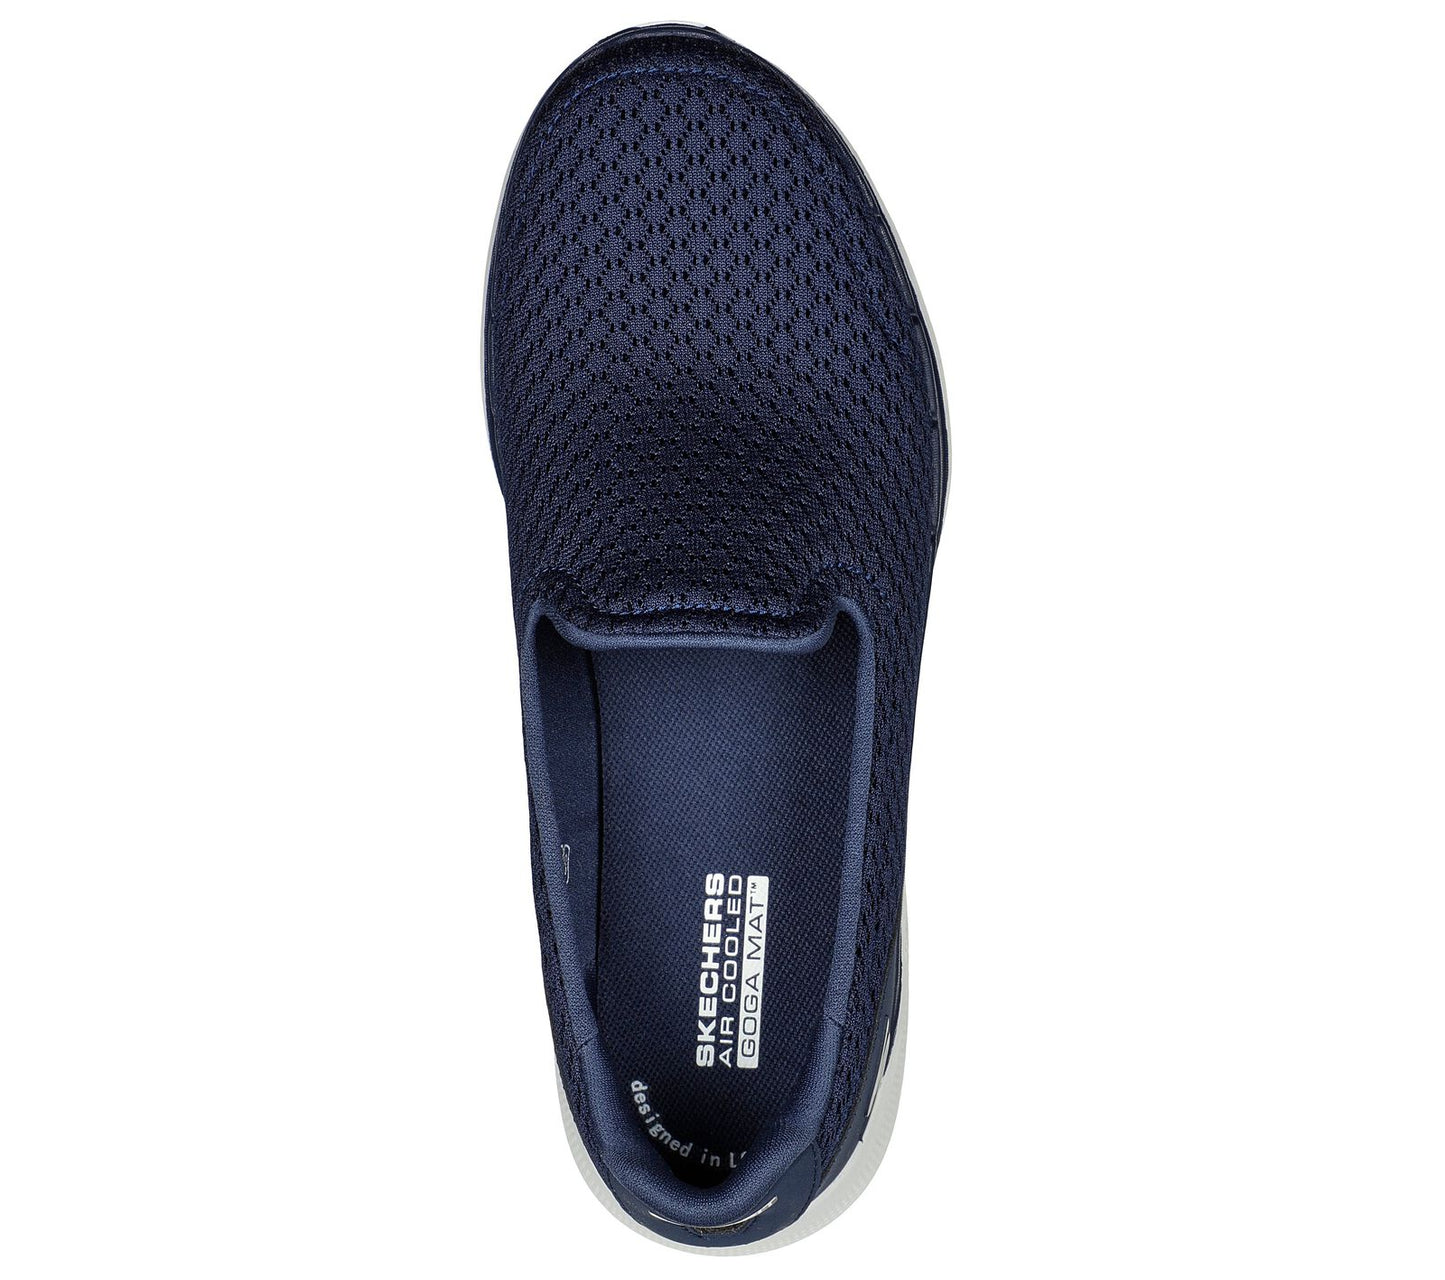 Skechers Go Walk 6 Sea coast - navy - Kirbys Footwear Ltd